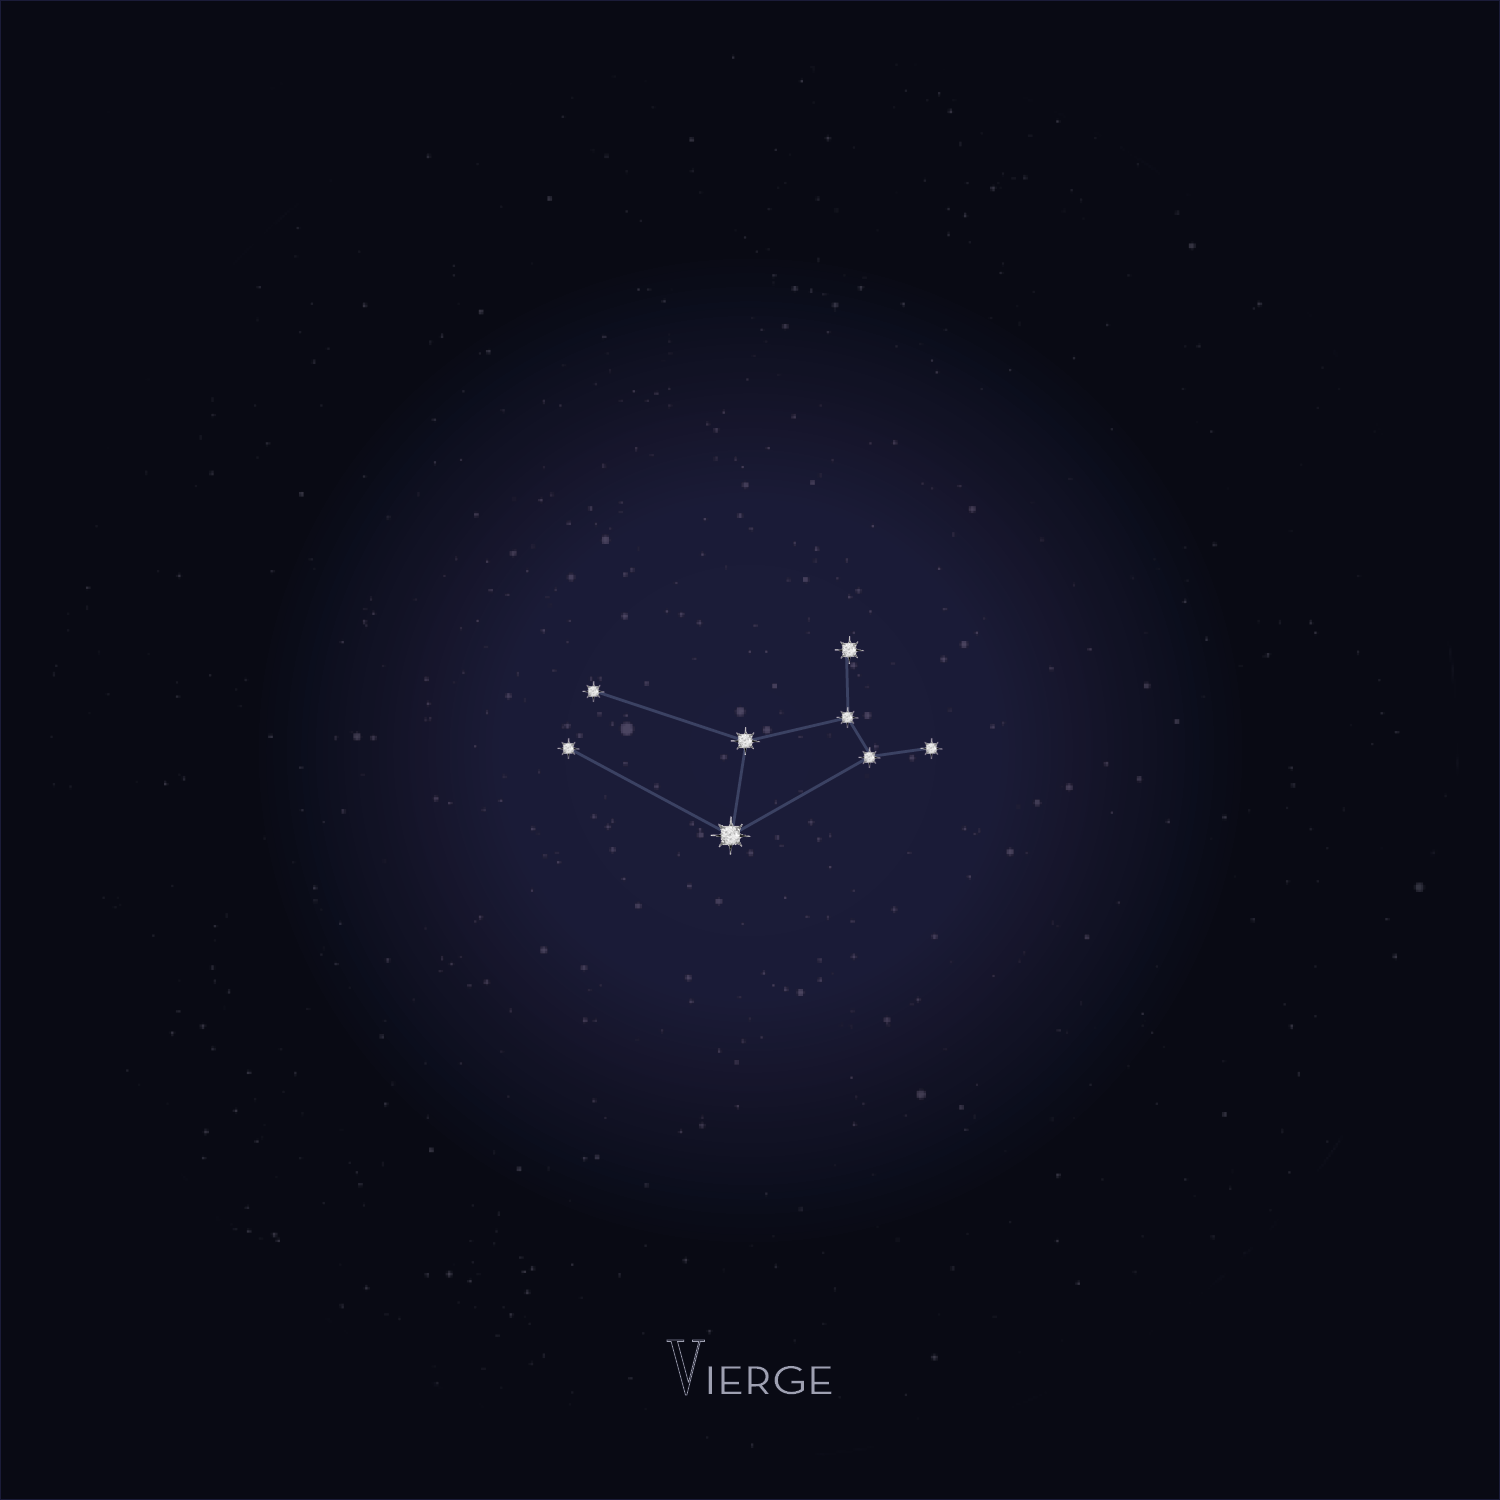 Poinçon 22 Virgo Constellations